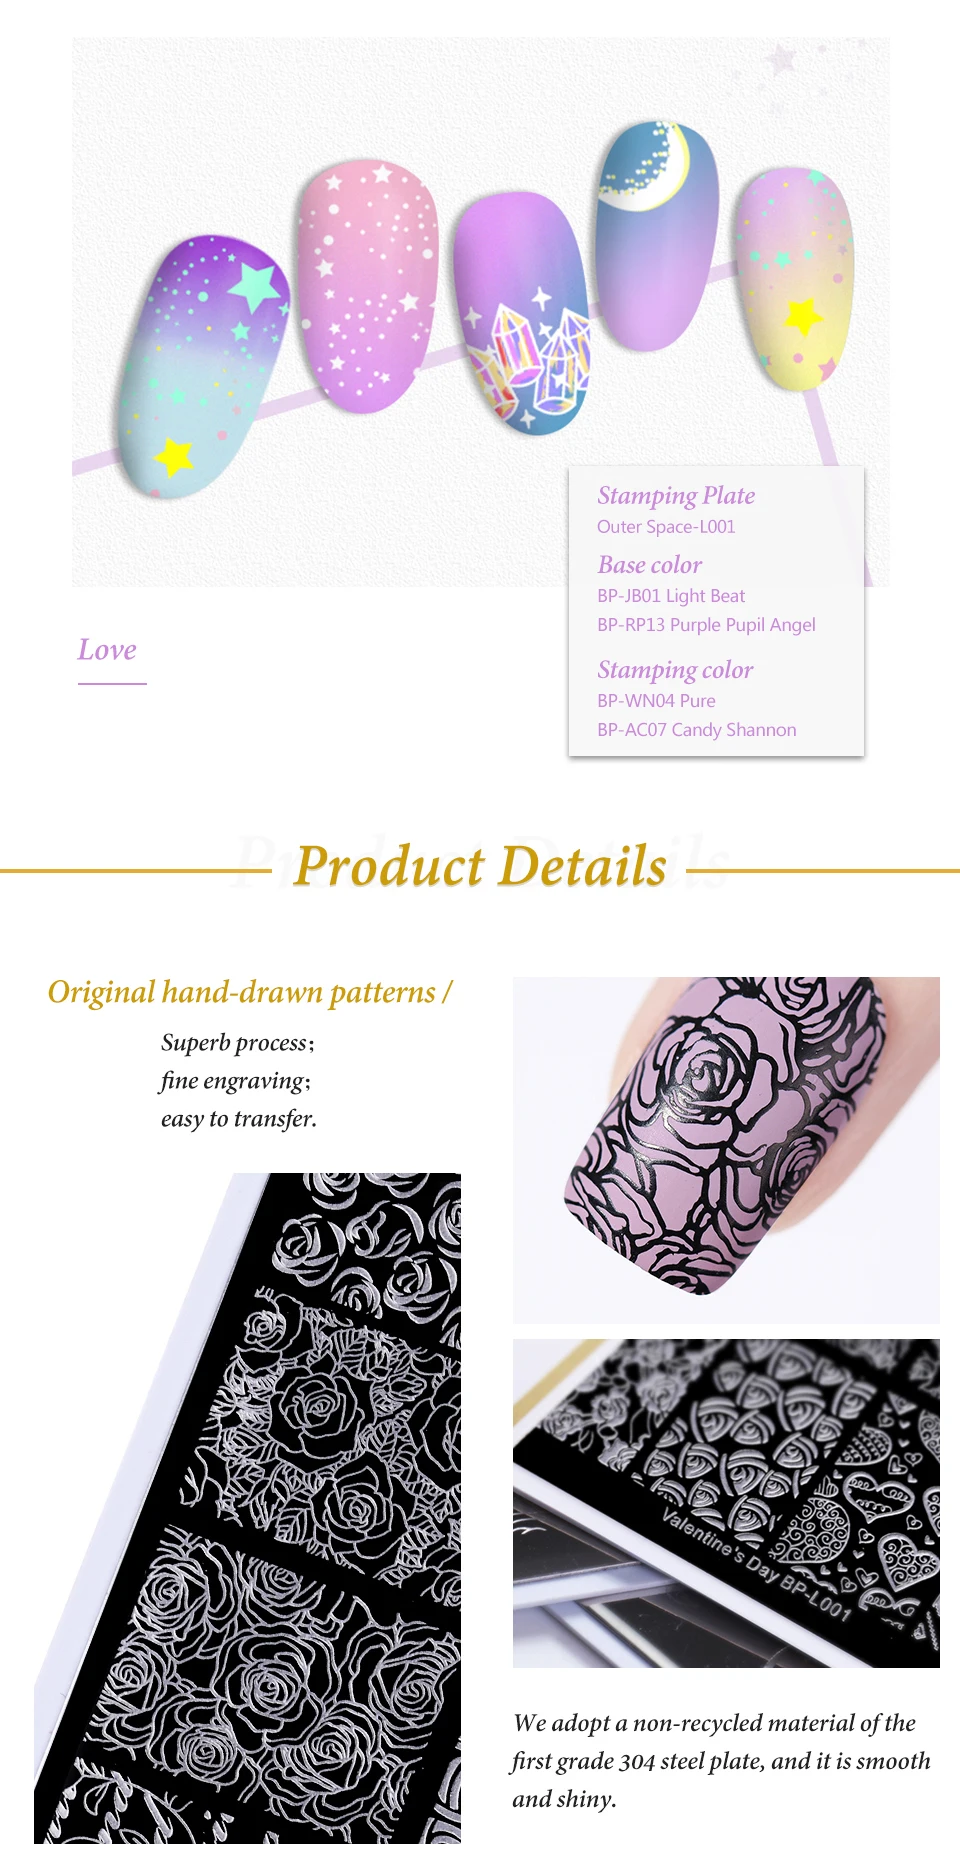 BORN PRETTY прямоугольные пластины для штамповки ногтей Звезда Луна космический узор печатная пластина для дизайна ногтей штамп шаблон DIY дизайн